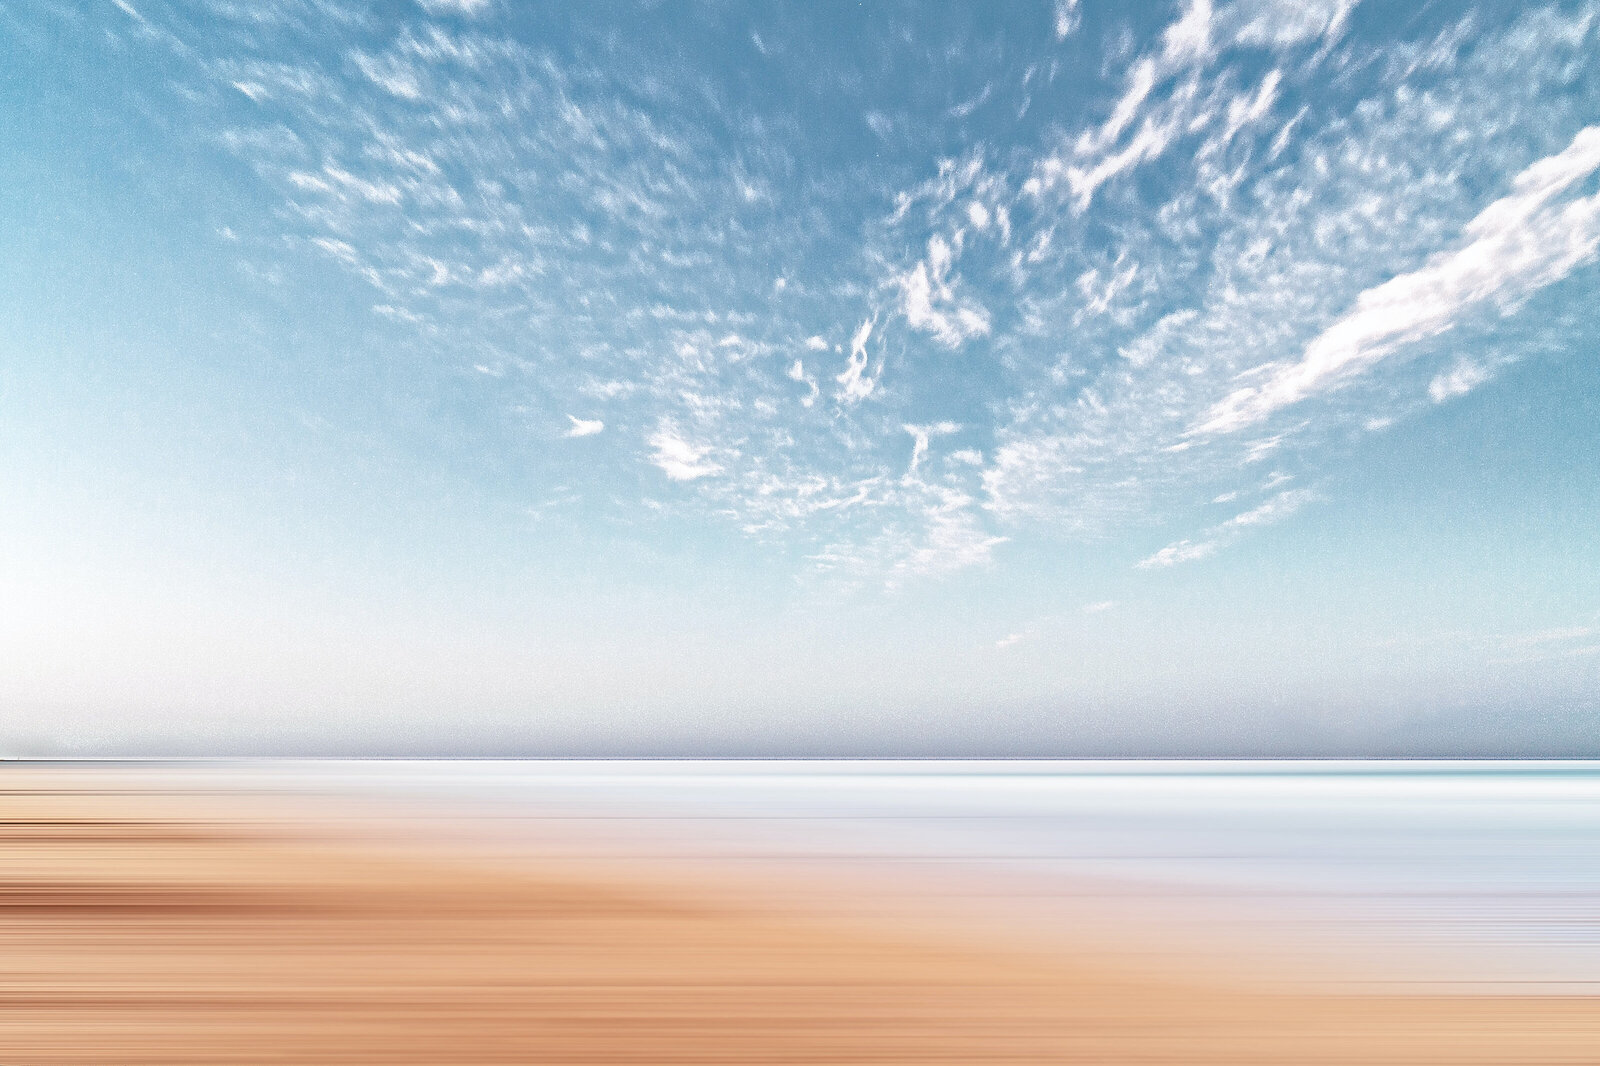 Beach scene with blue sky, ocean and sand